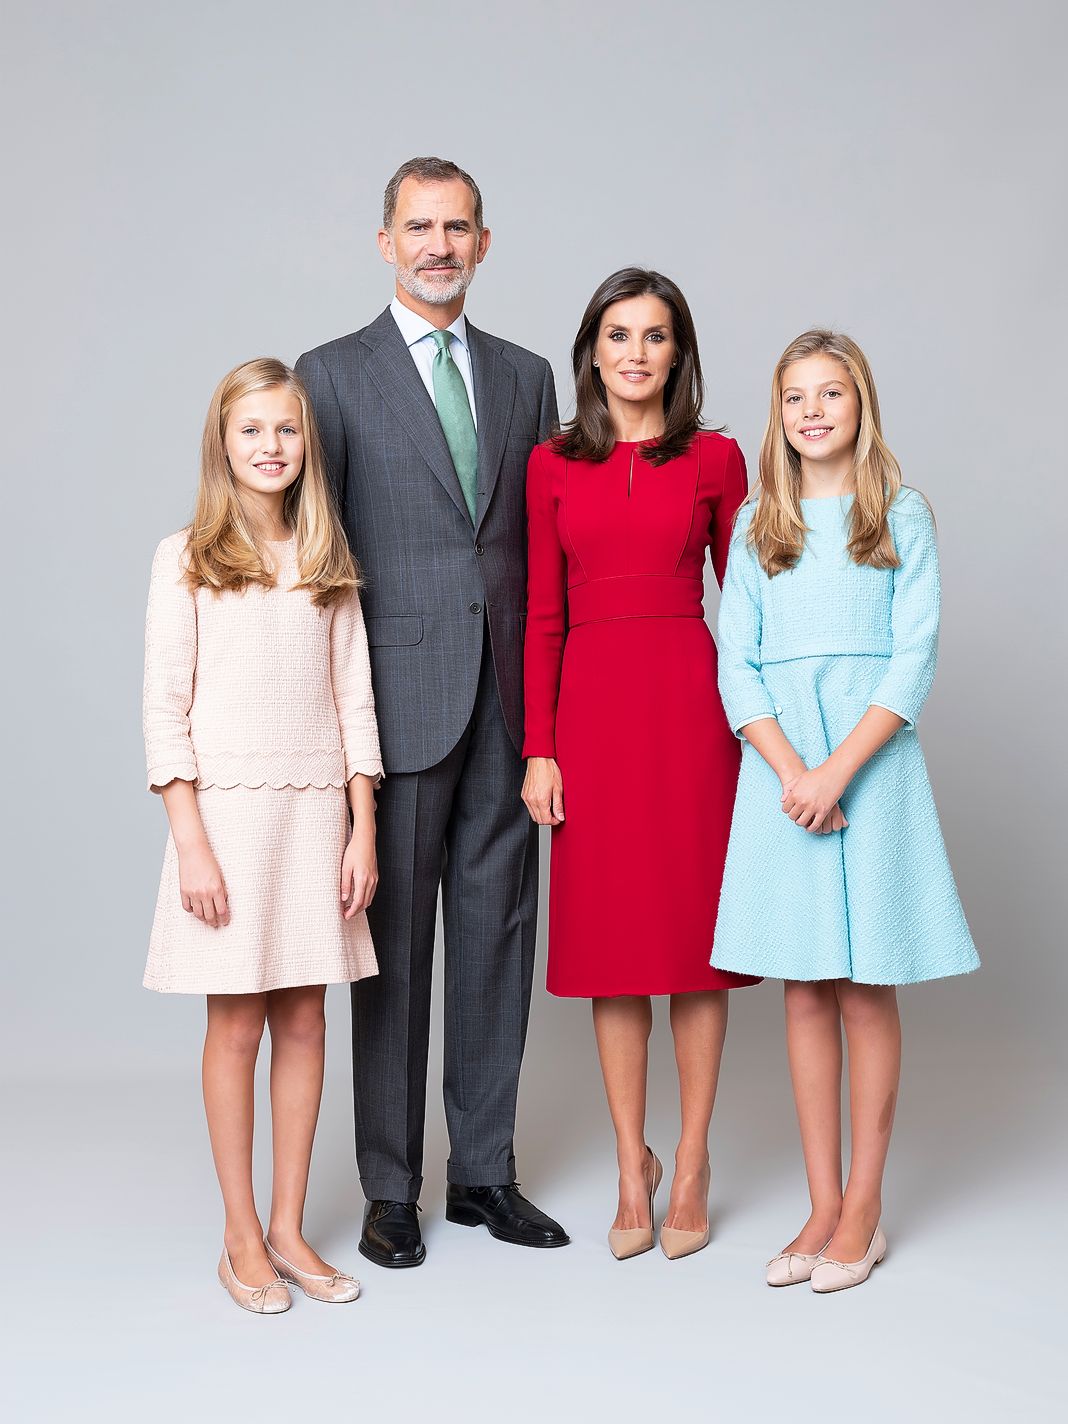 Король Испании Филипп, королева Испании Летисия с дочерьми, принцессами Леонор и Софией, 11 февраля 2020 г.